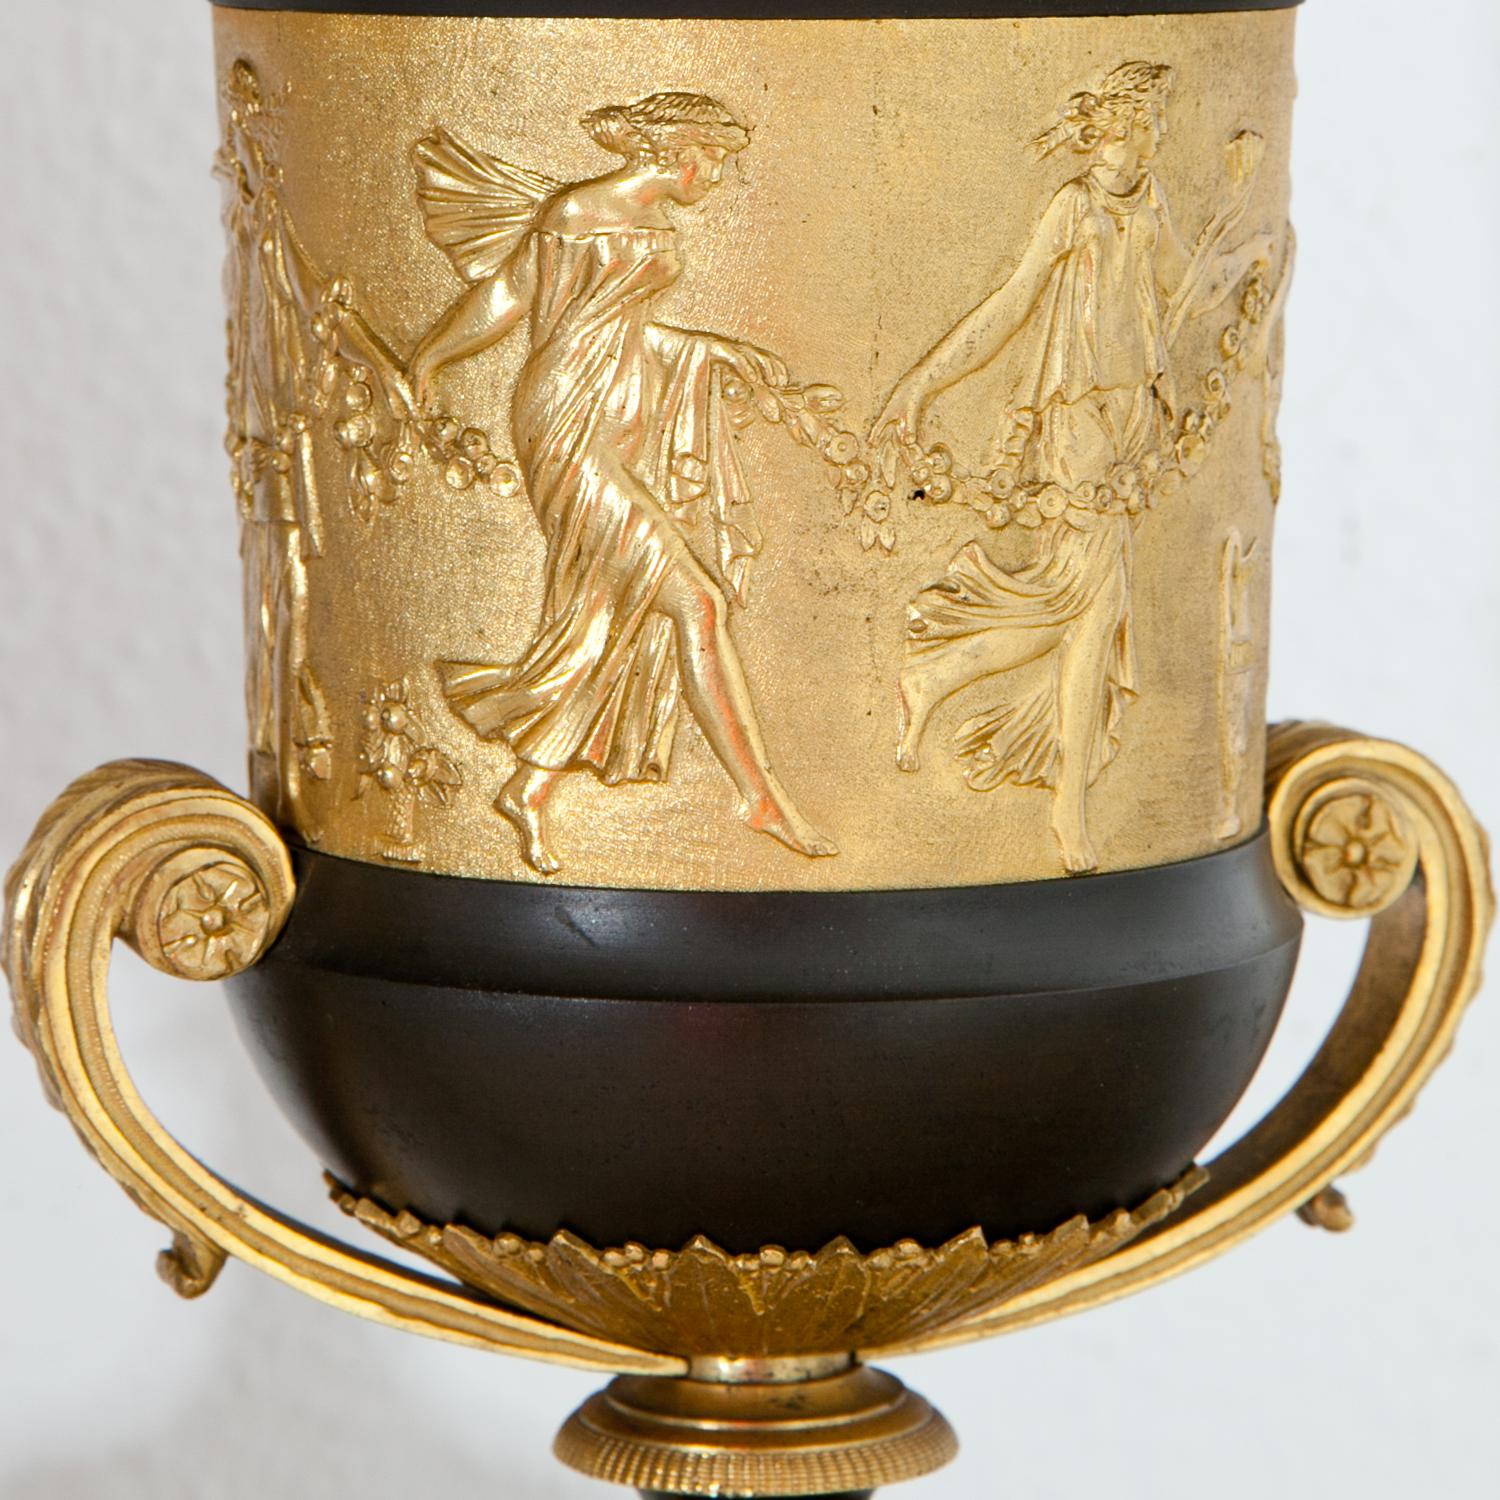 Paire d'urnes en partie dorées de Brûle-Parfum, attribuées à Claude Gallé, reposant sur des bases en marbre gris avec des mascarons d'Hermès. Les urnes sont décorées d'un mur en relief doré représentant des Maenades dansantes. Le couvercle et le